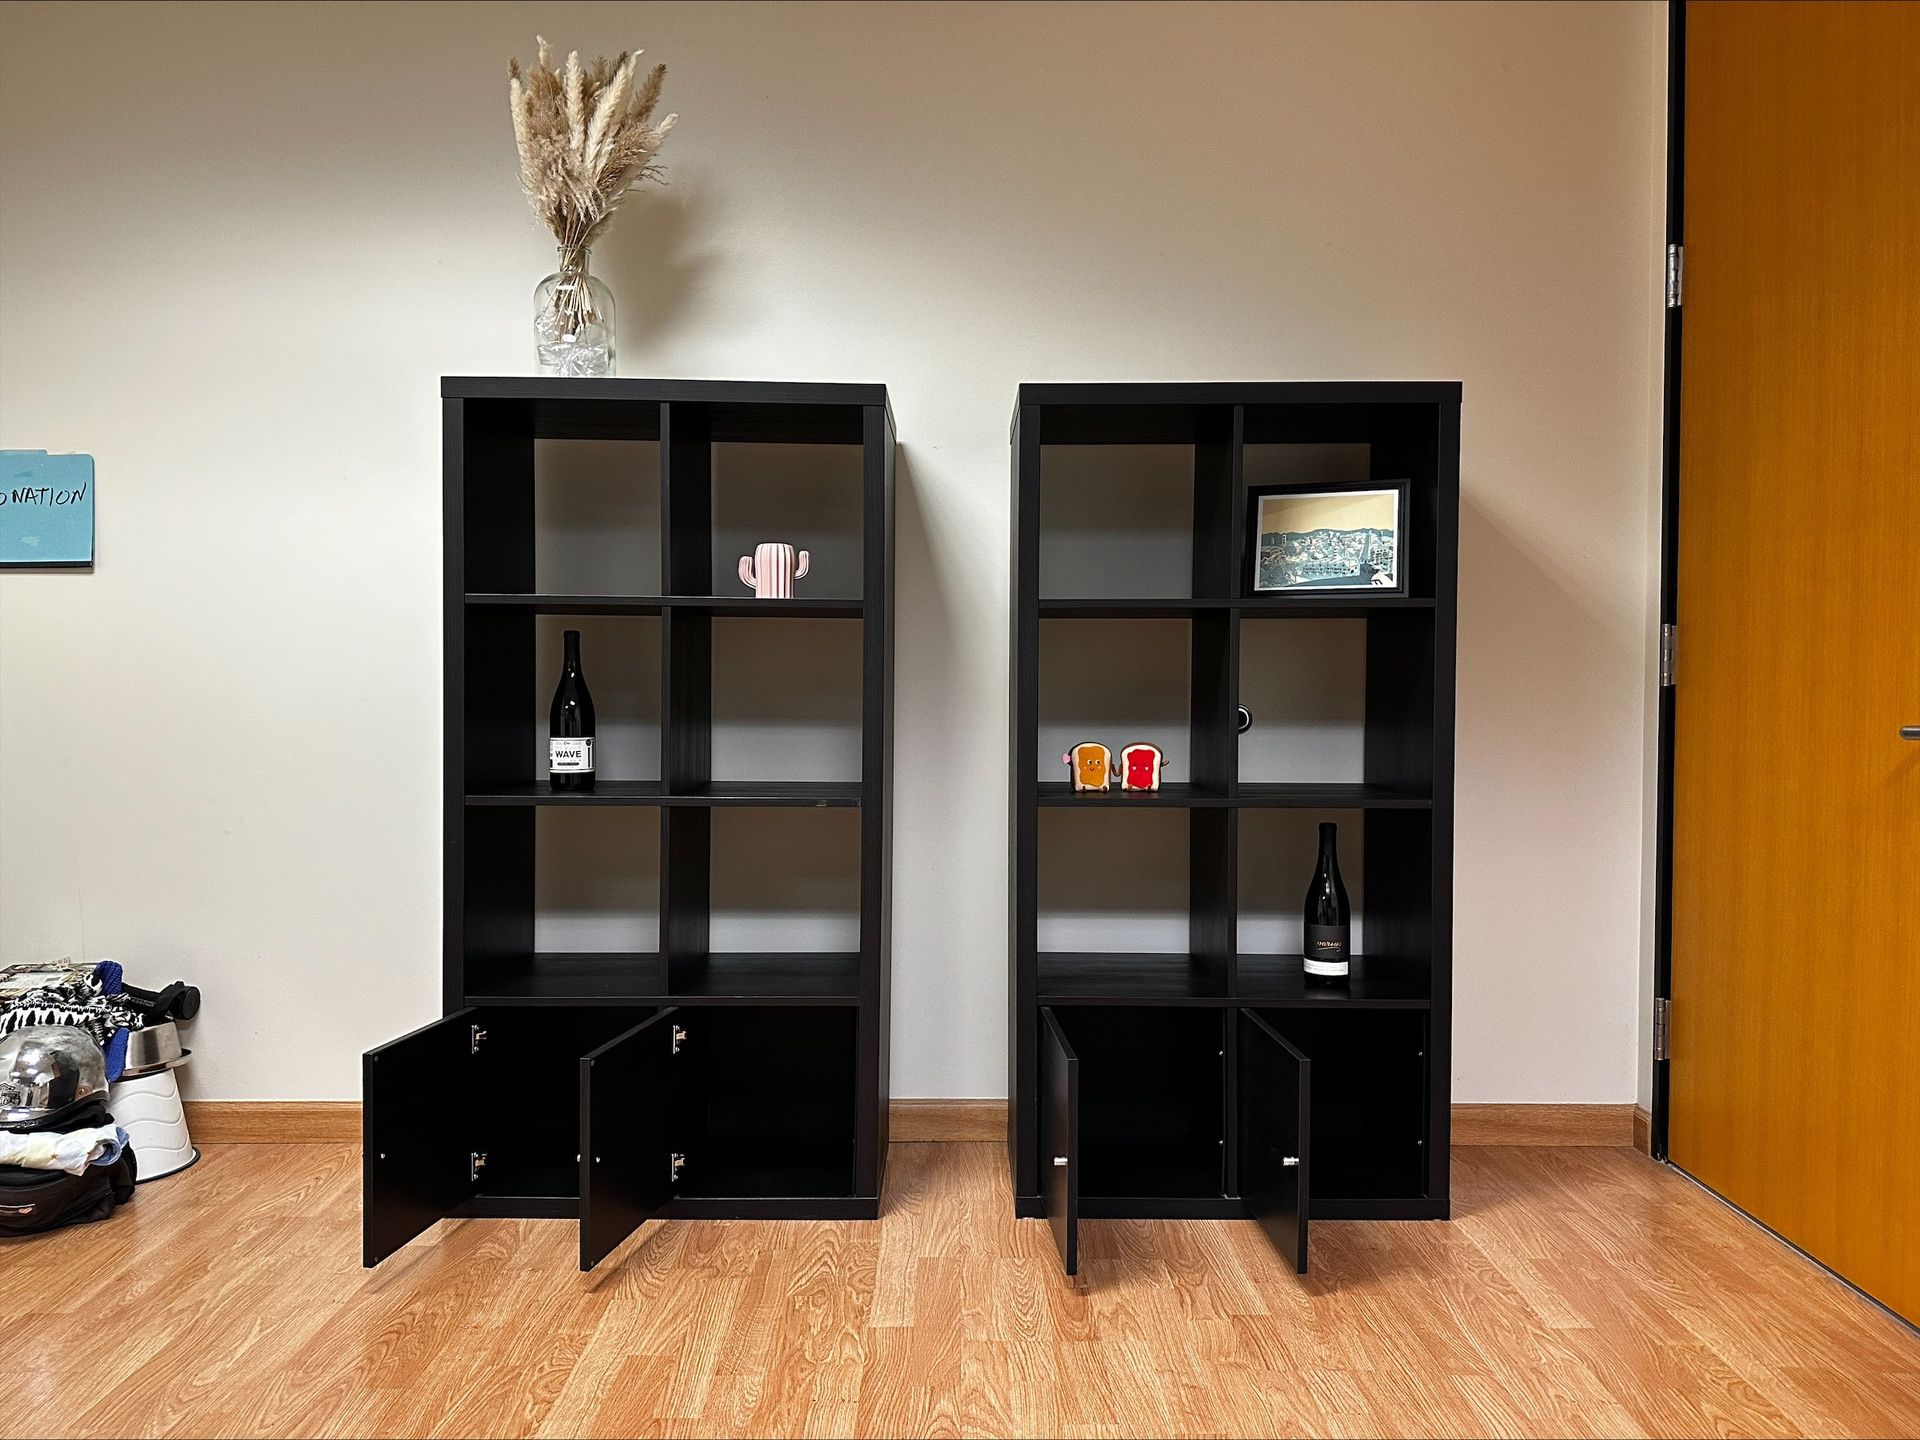 Book Shelves